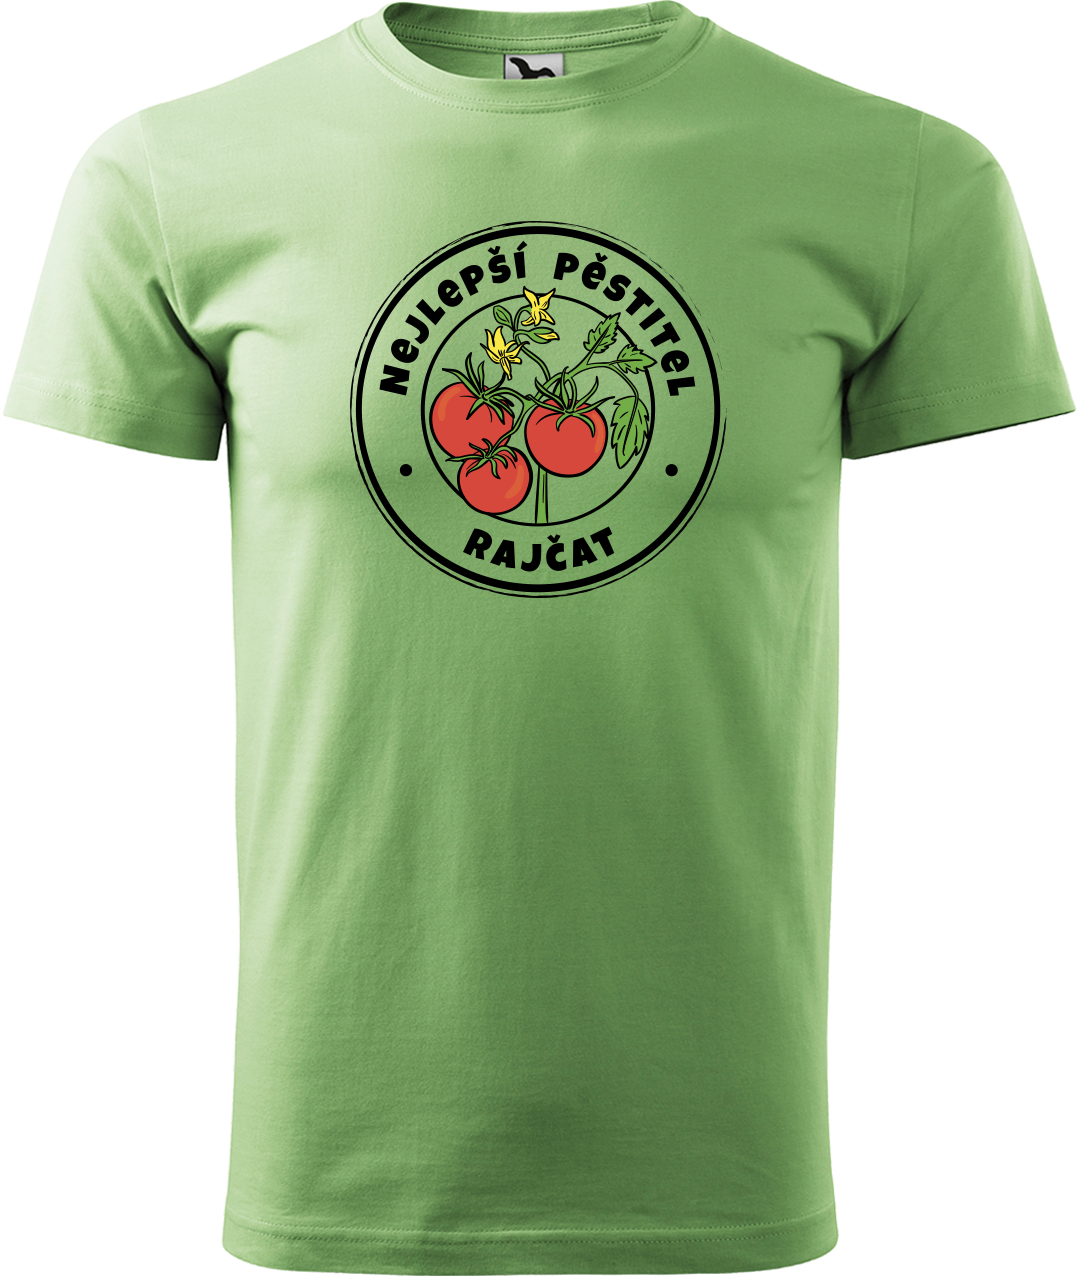 Tričko pro zahradníka - Nejlepší pěstitel rajčat Velikost: 2XL, Barva: Trávově zelená (39)